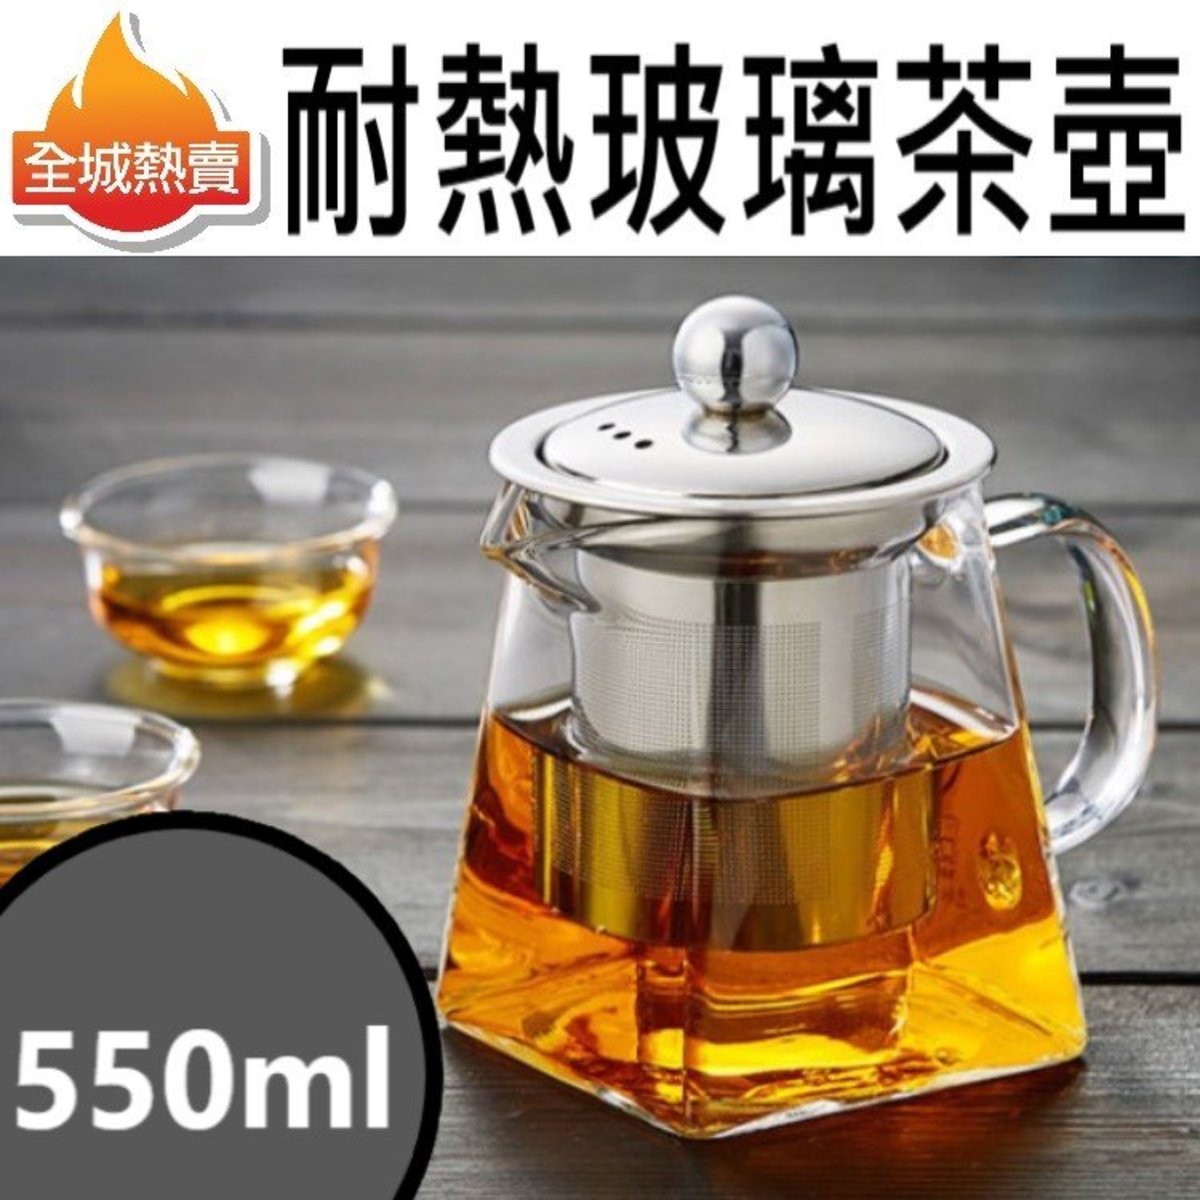 [550ml] 耐熱玻璃茶壺 可拆洗不鏽鋼內膽 耐高溫